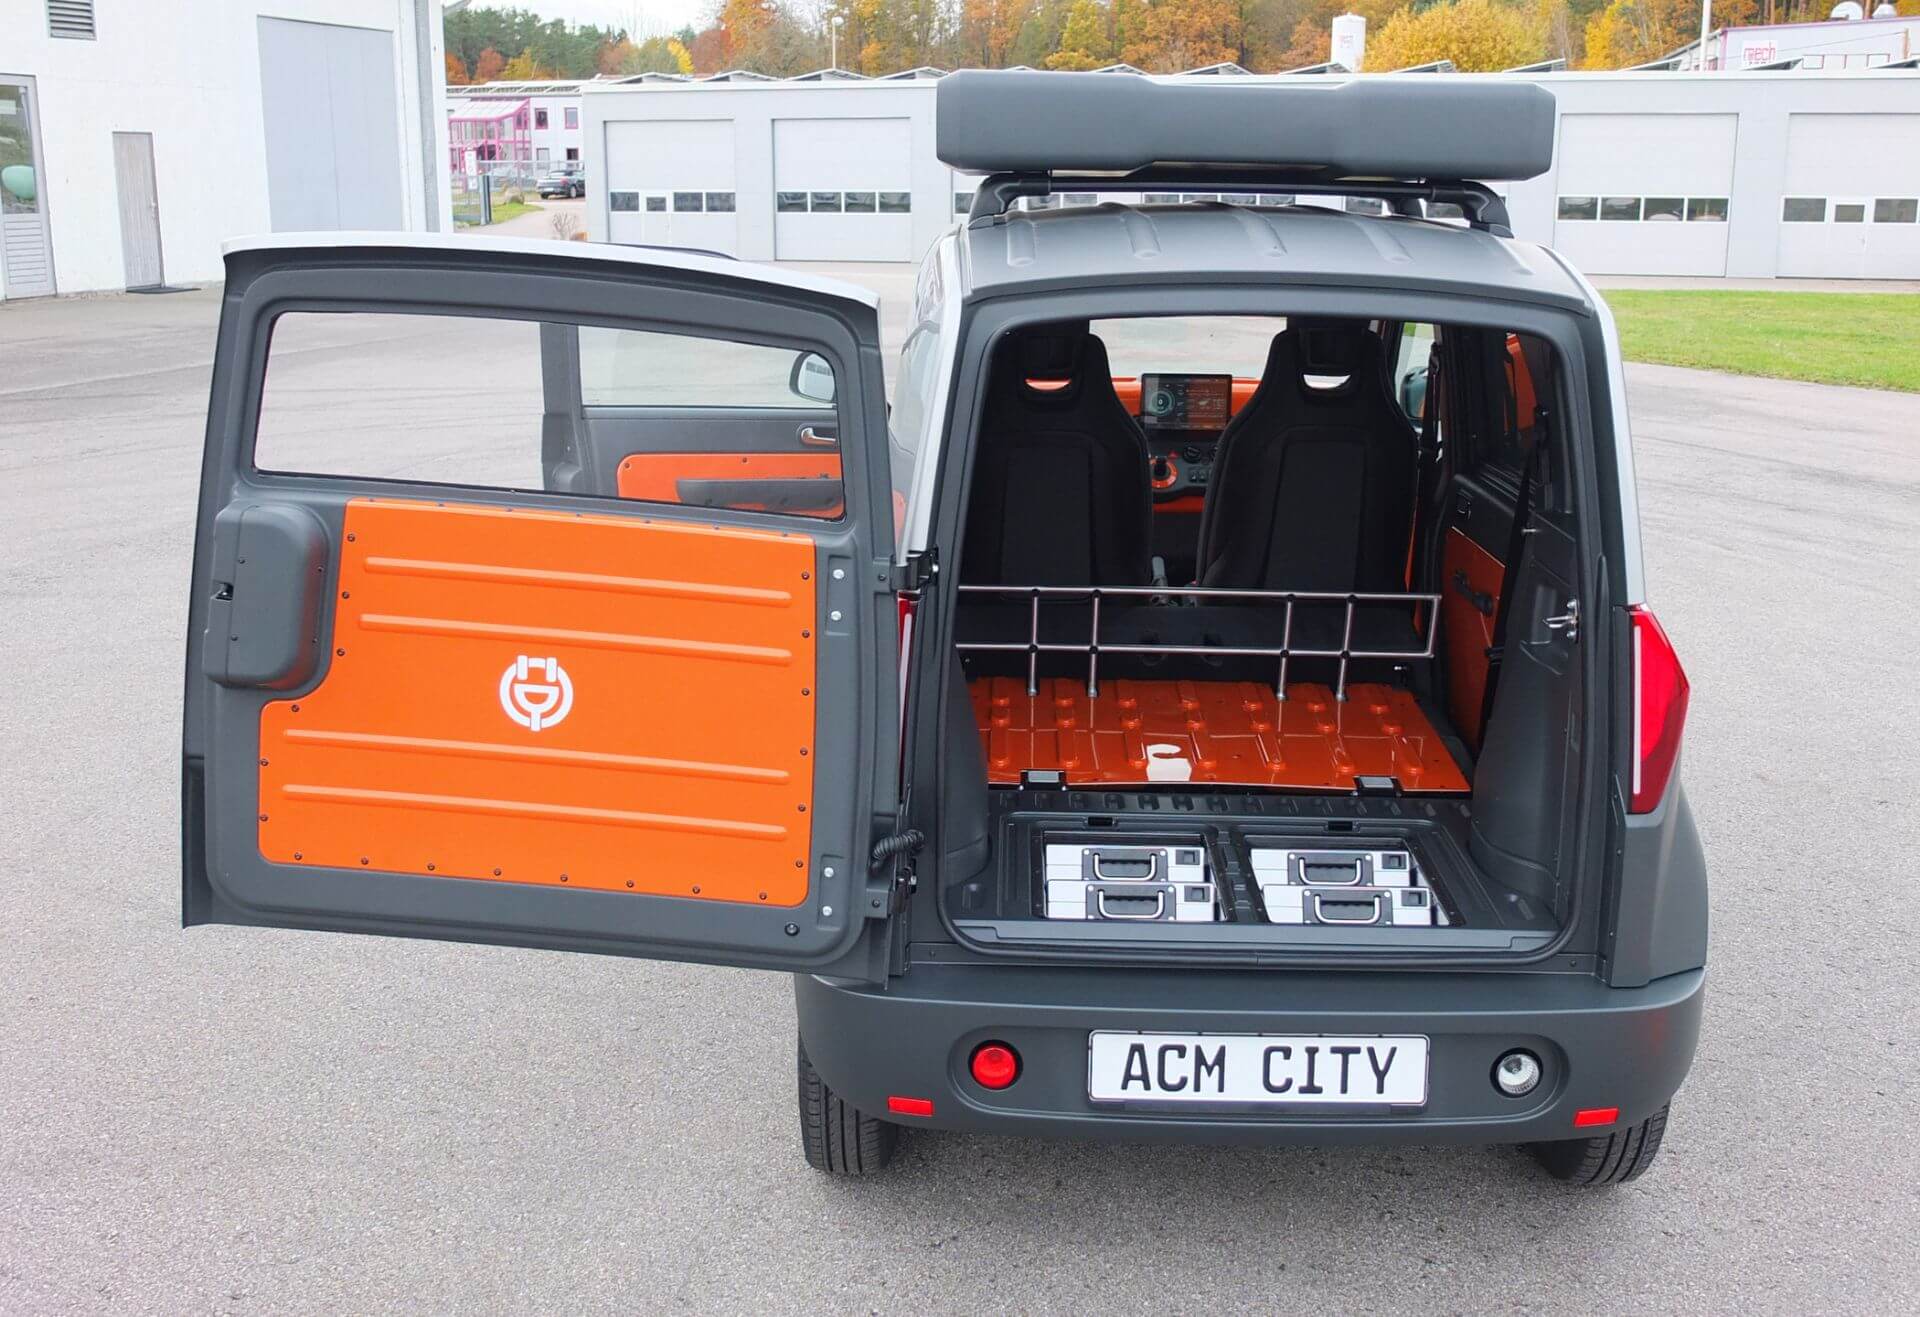 ACM City One может использоваться в качестве небольшого коммерческого автомобиля